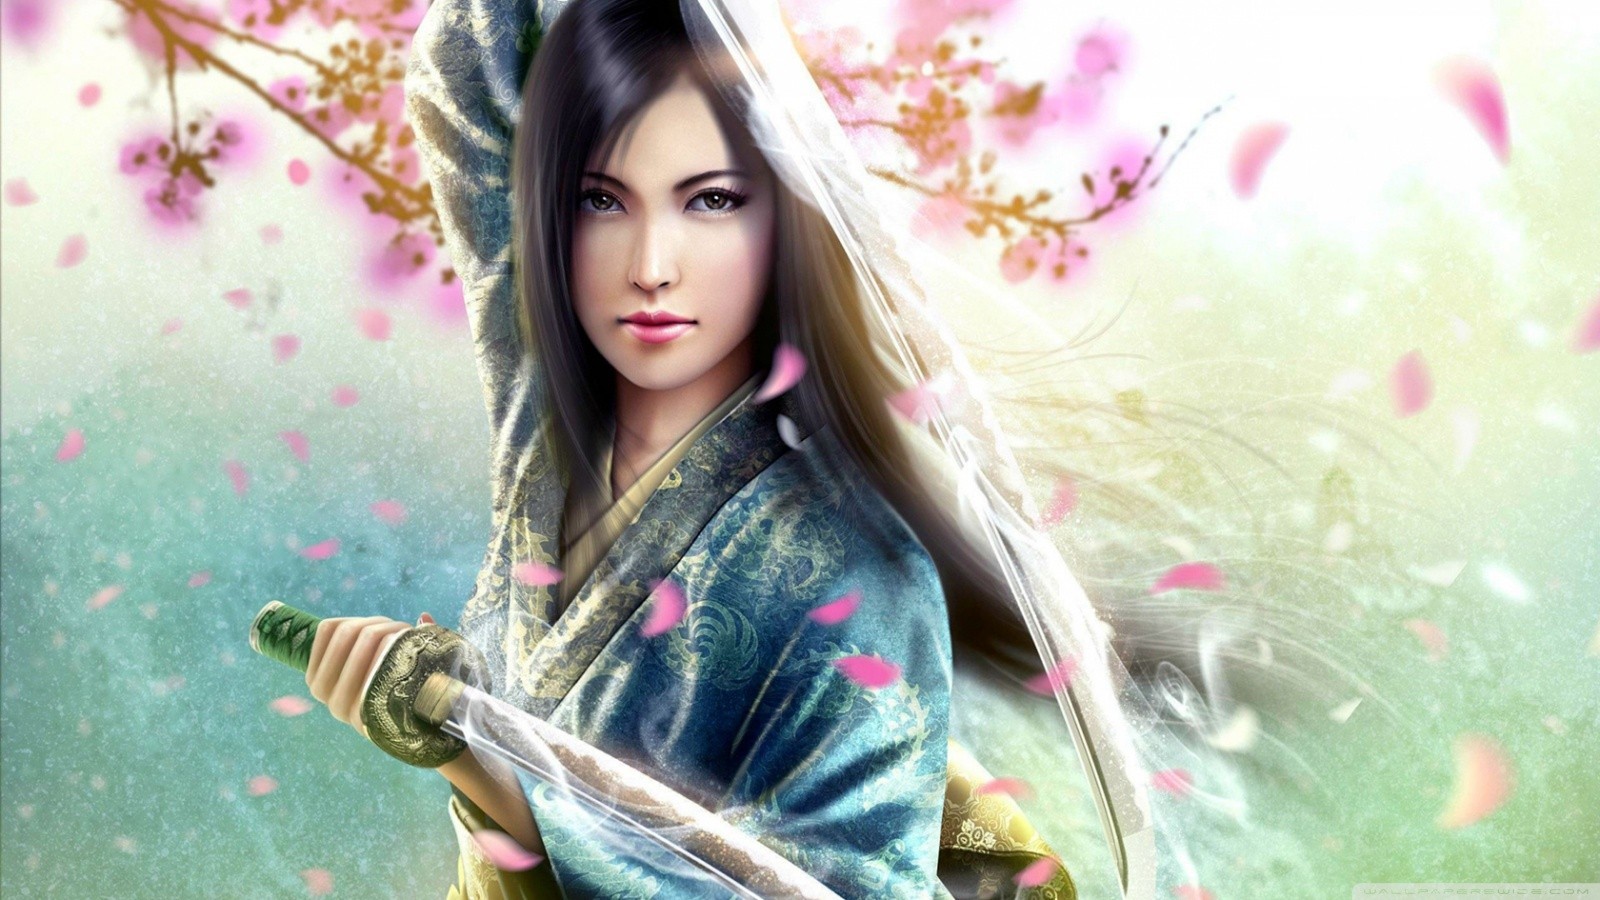 women, Anime, Sword, Fantasy art, Artwork Wallpaper